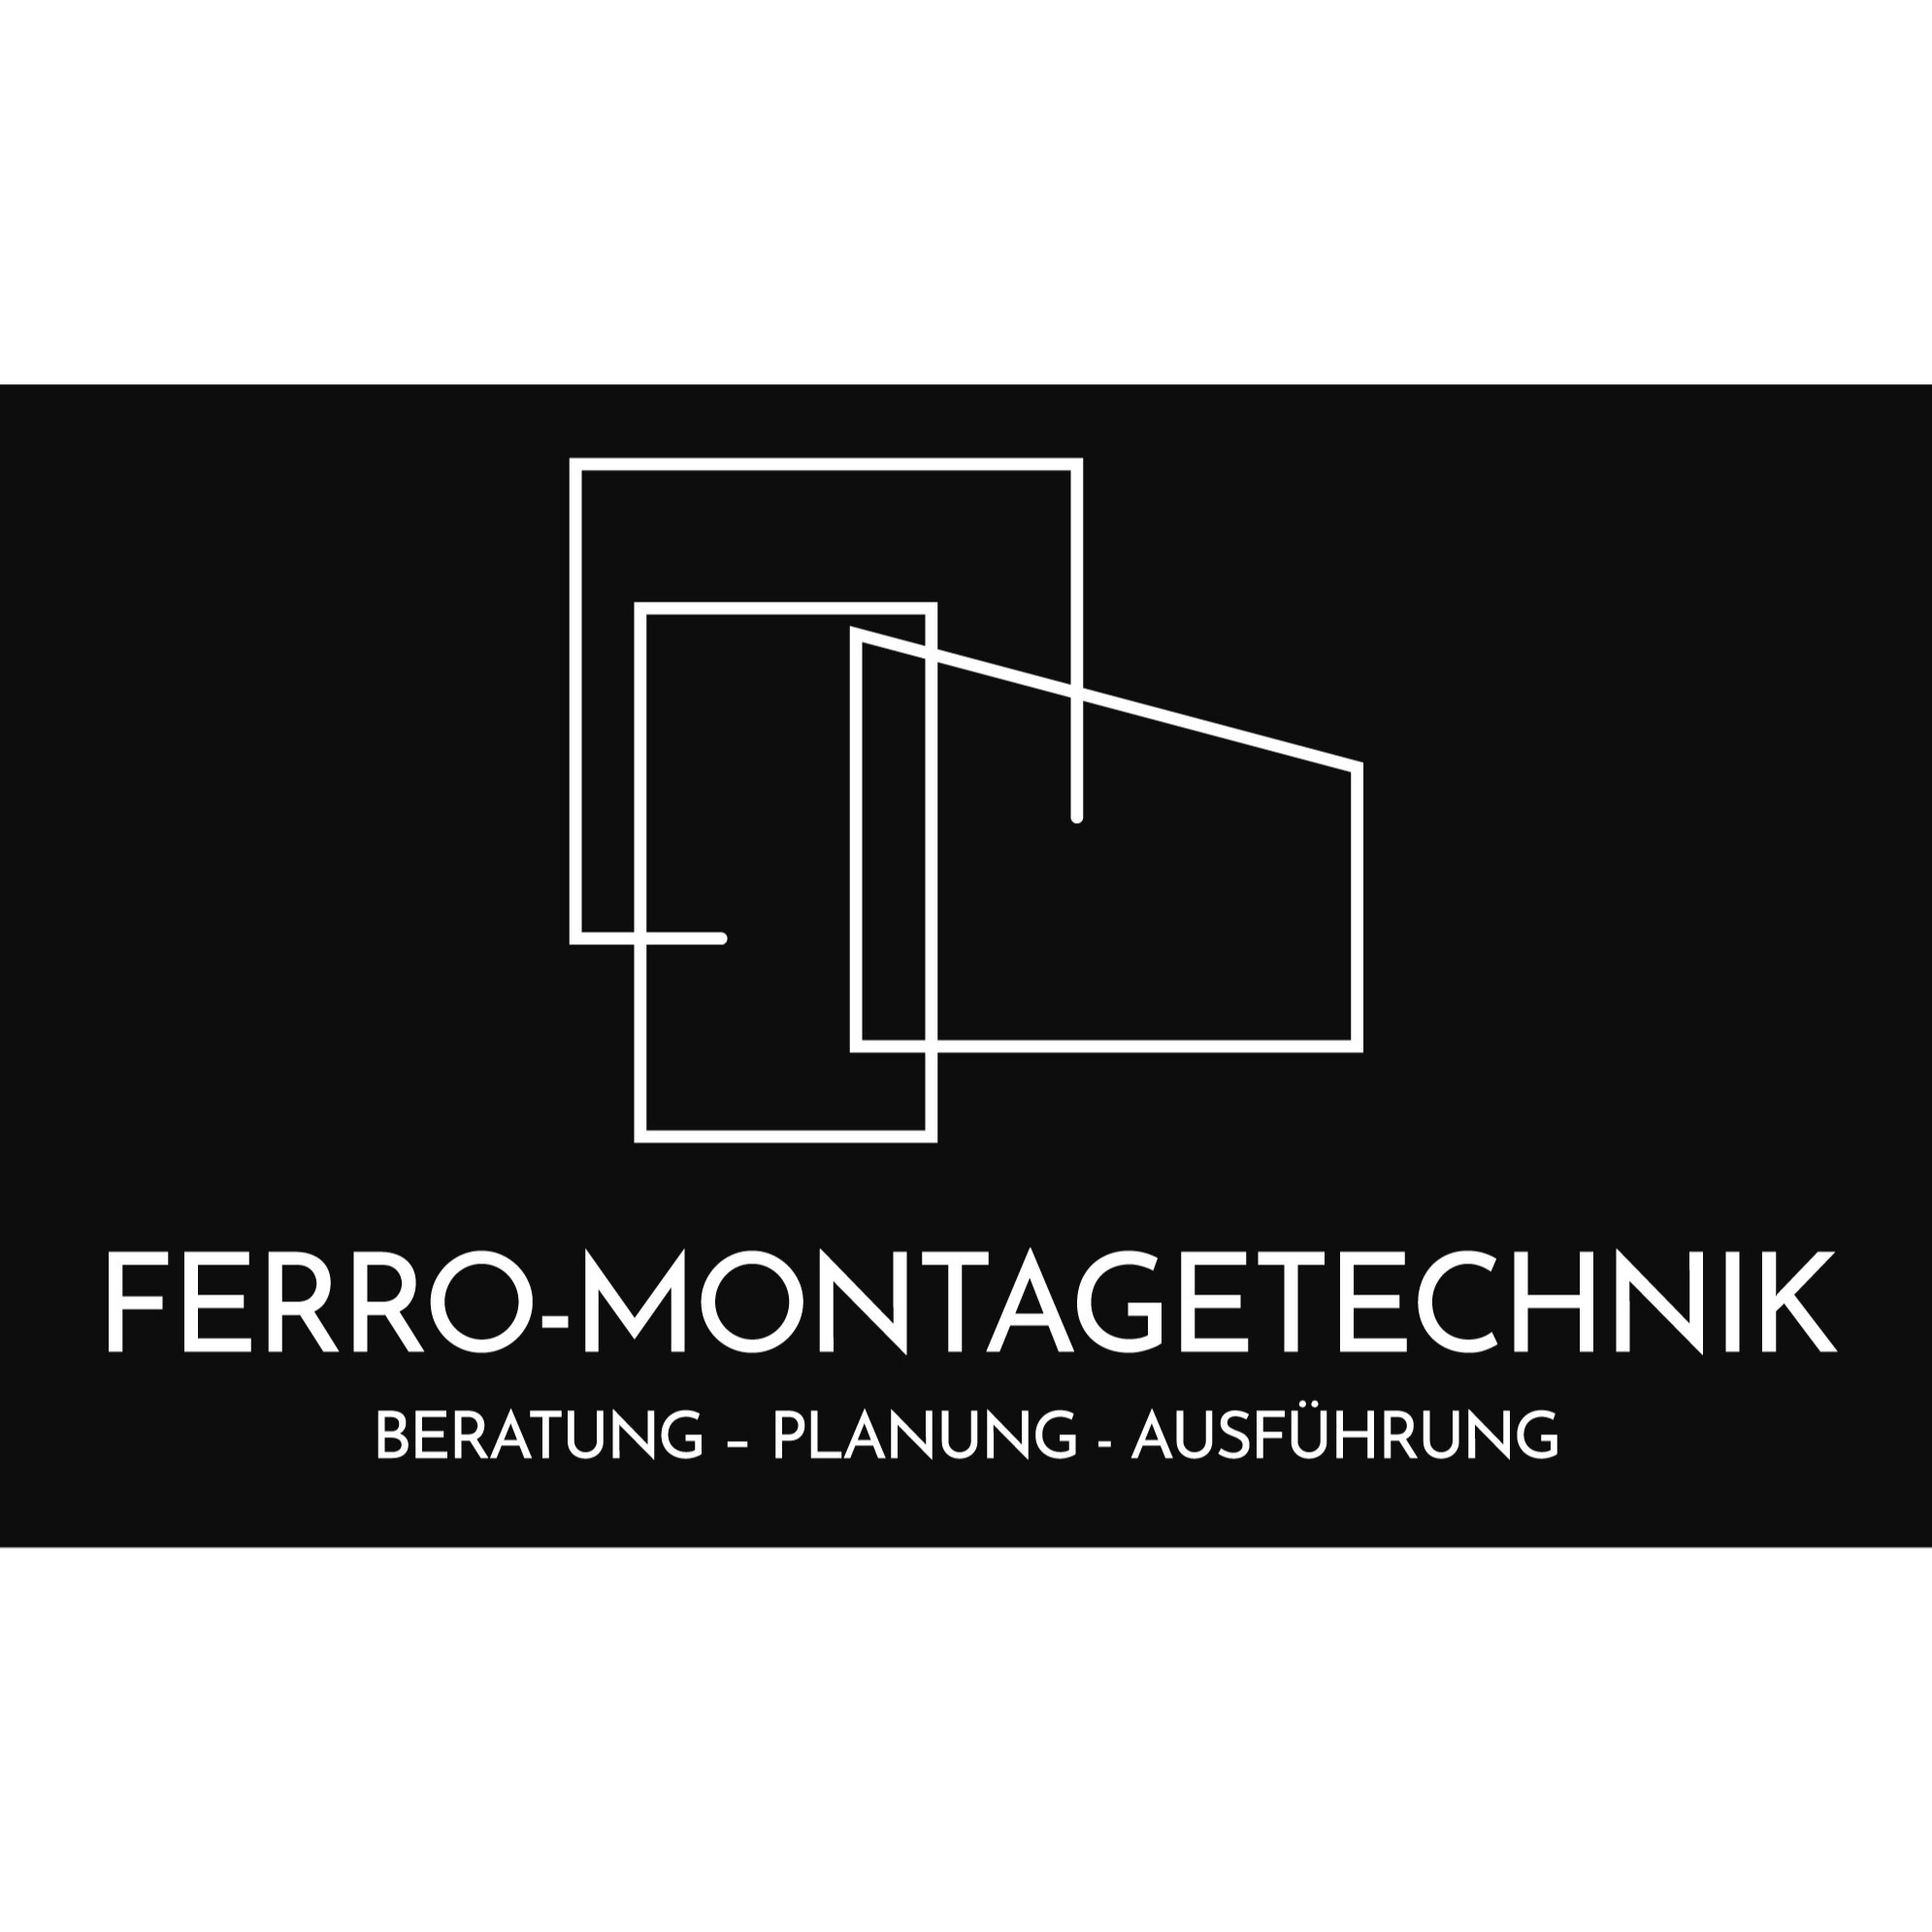 Ferro-Montagetechnik Beratung - Planung - Ausführung Logo